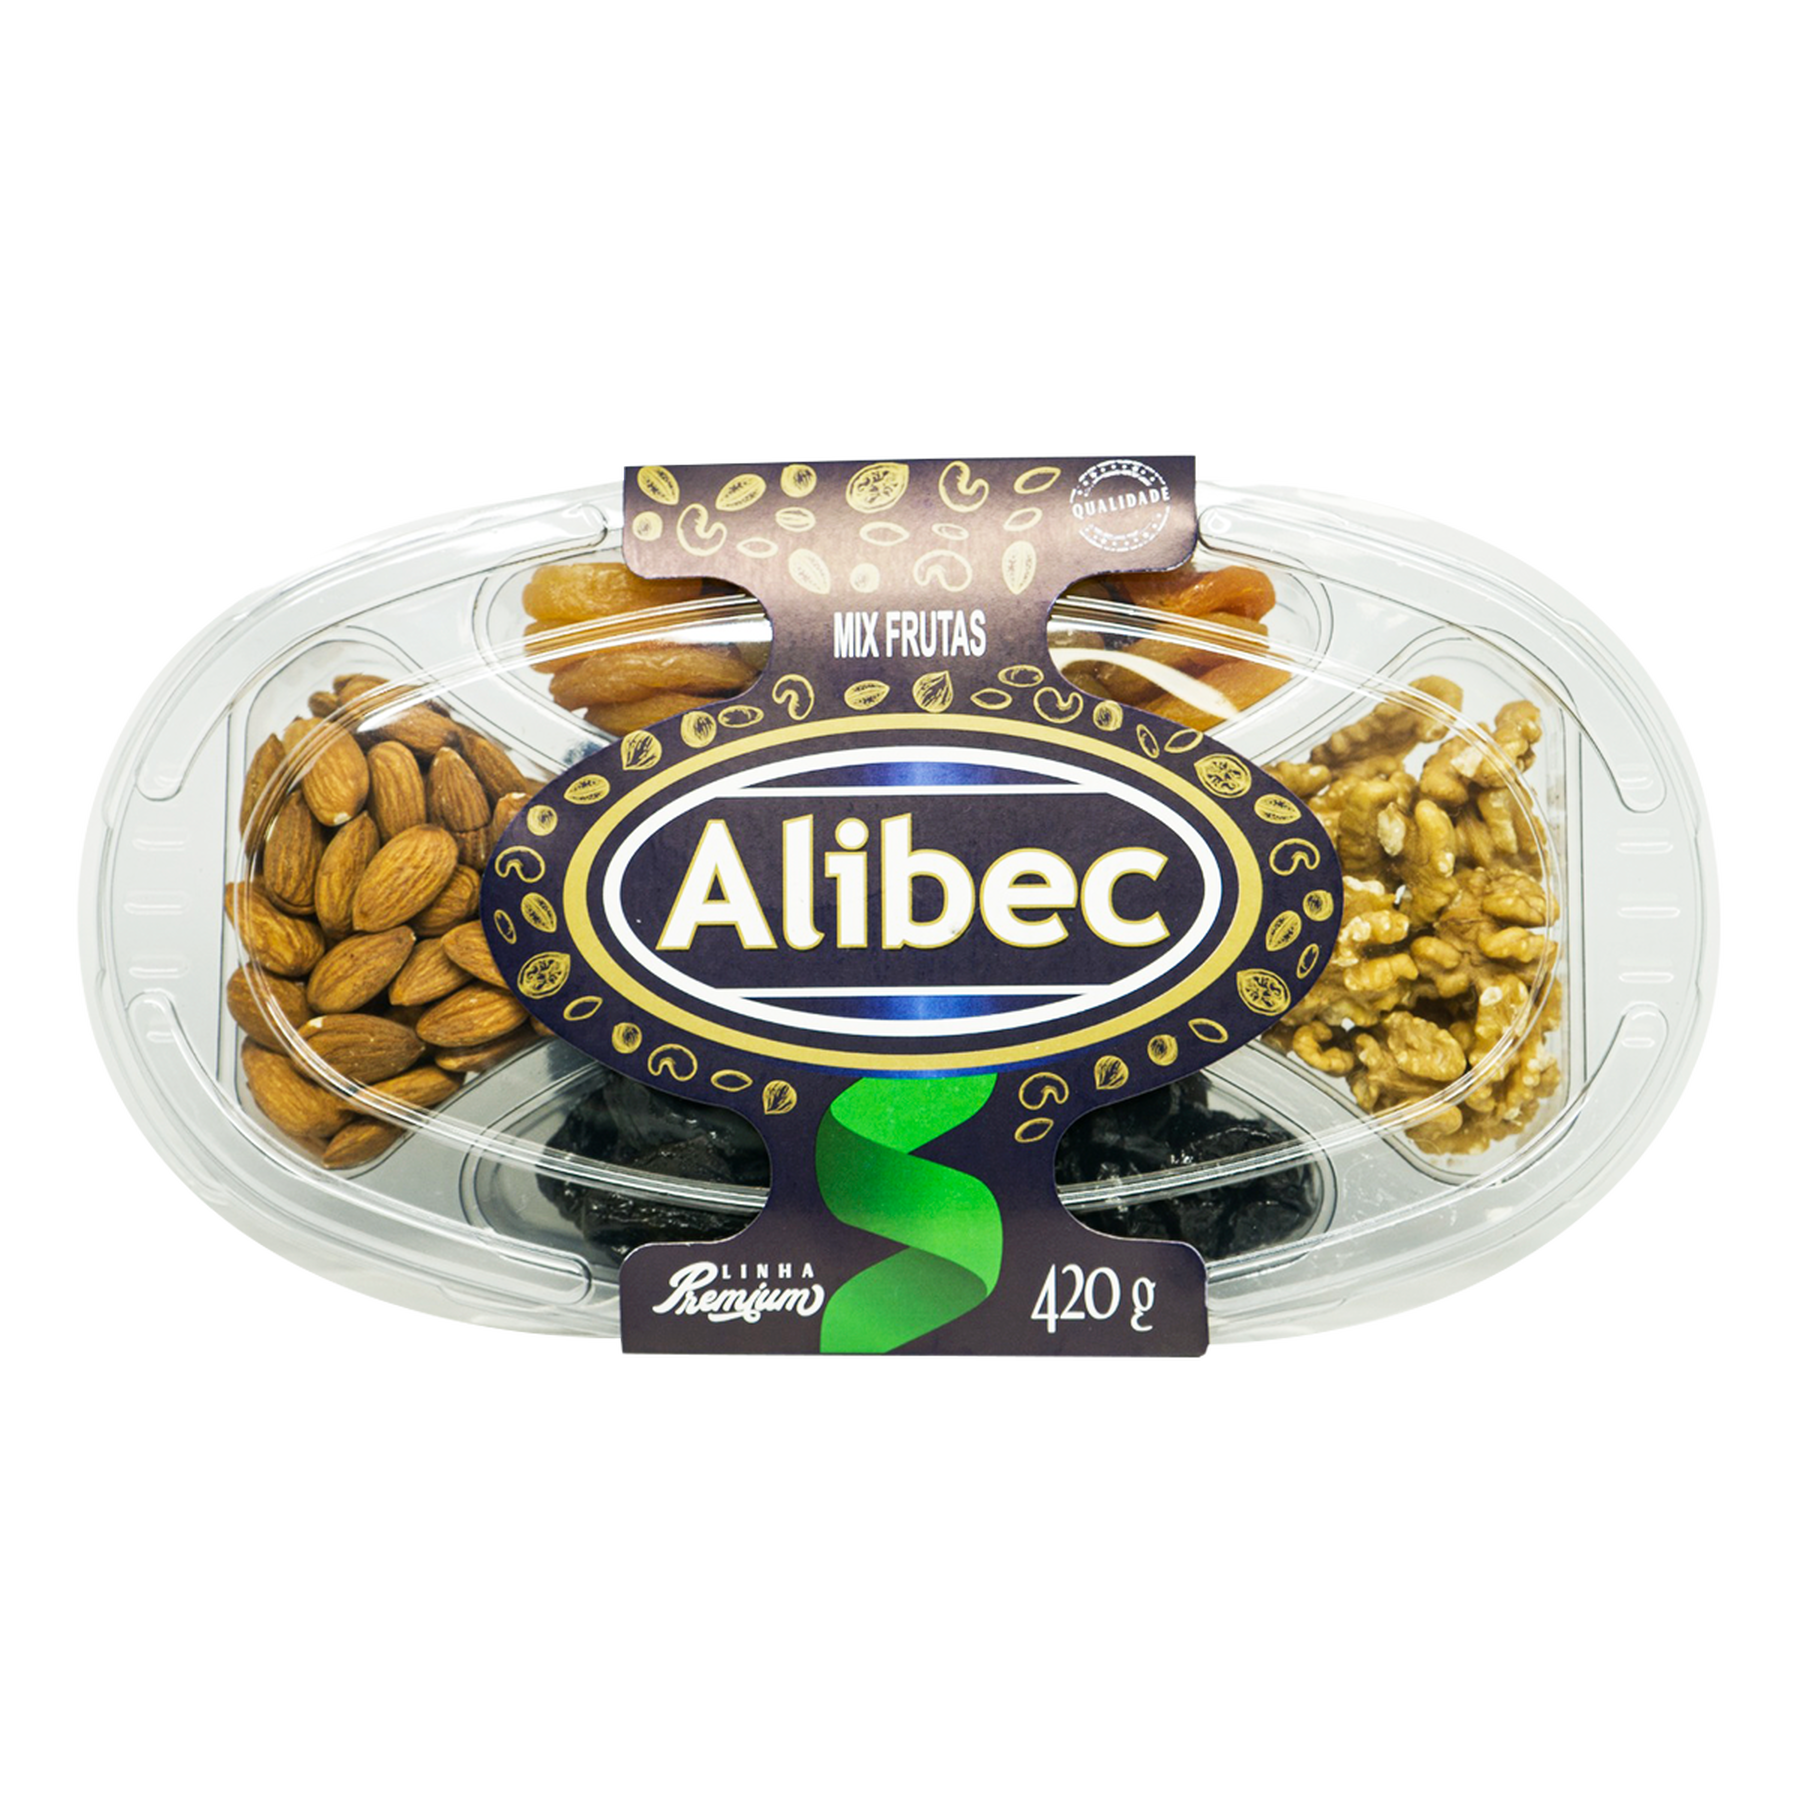 Mix Frutas Premium Alibec Bandeja 420g